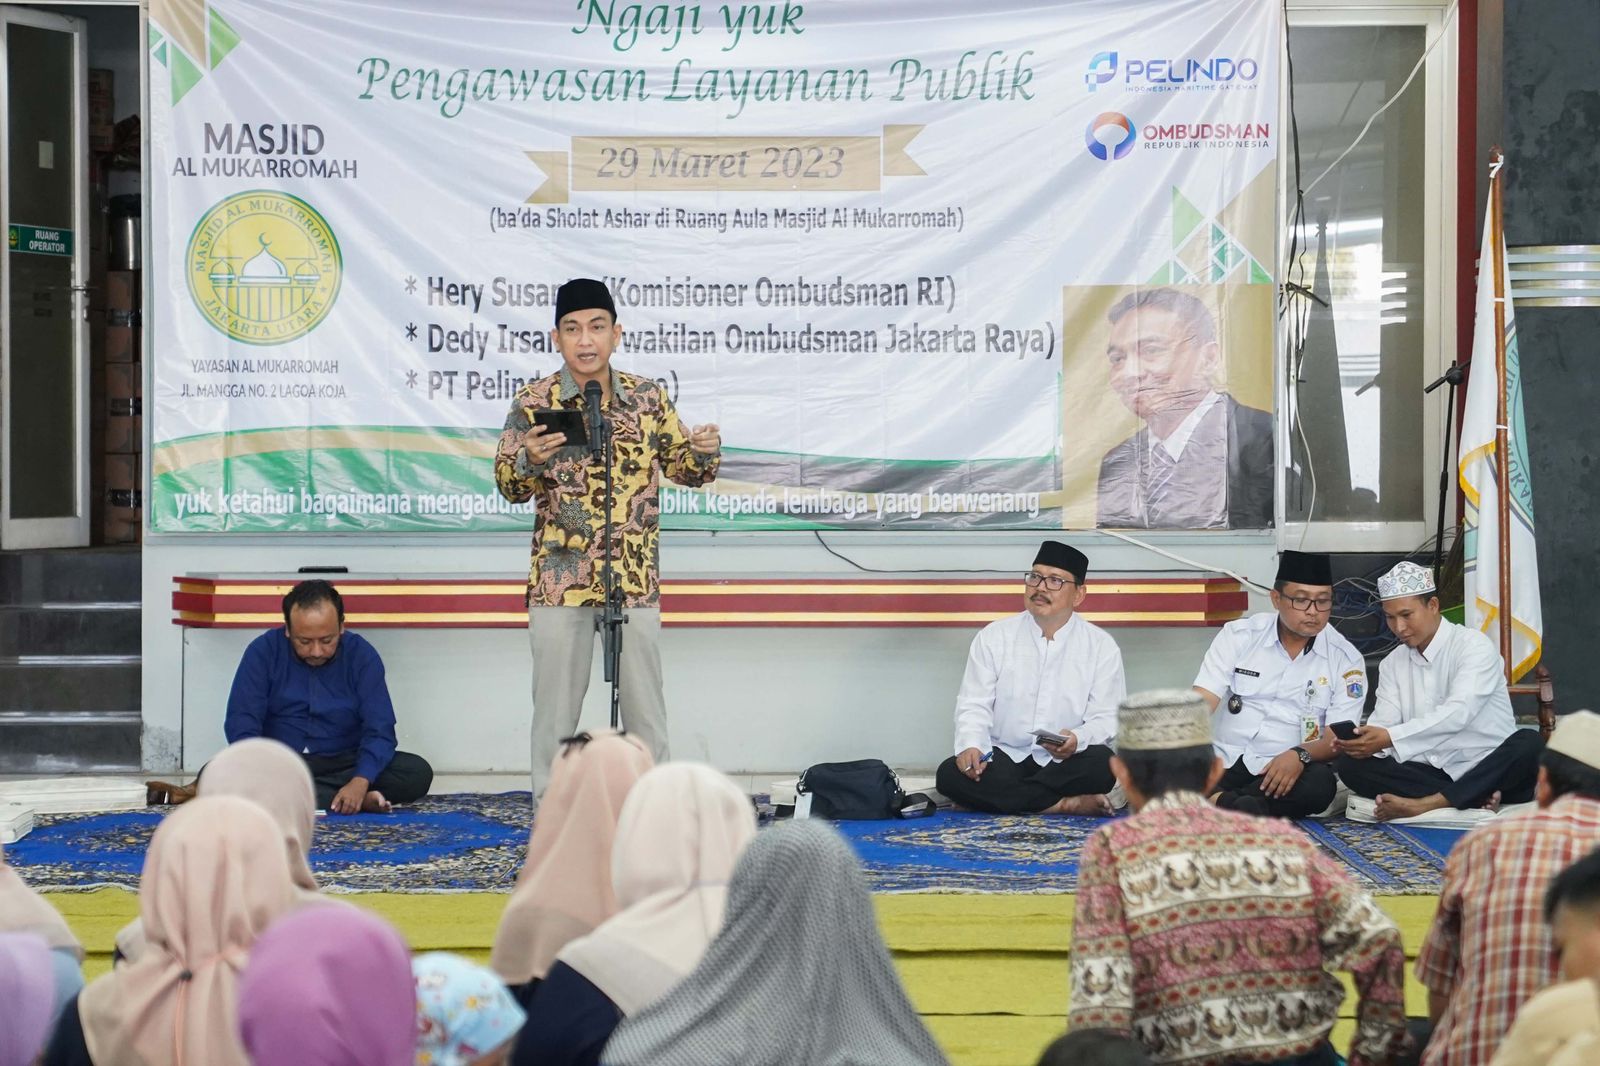 Pengawasan Pelayanan Publik, Ombudsman RI Perkuat Peranserta Komunitas Masjid.